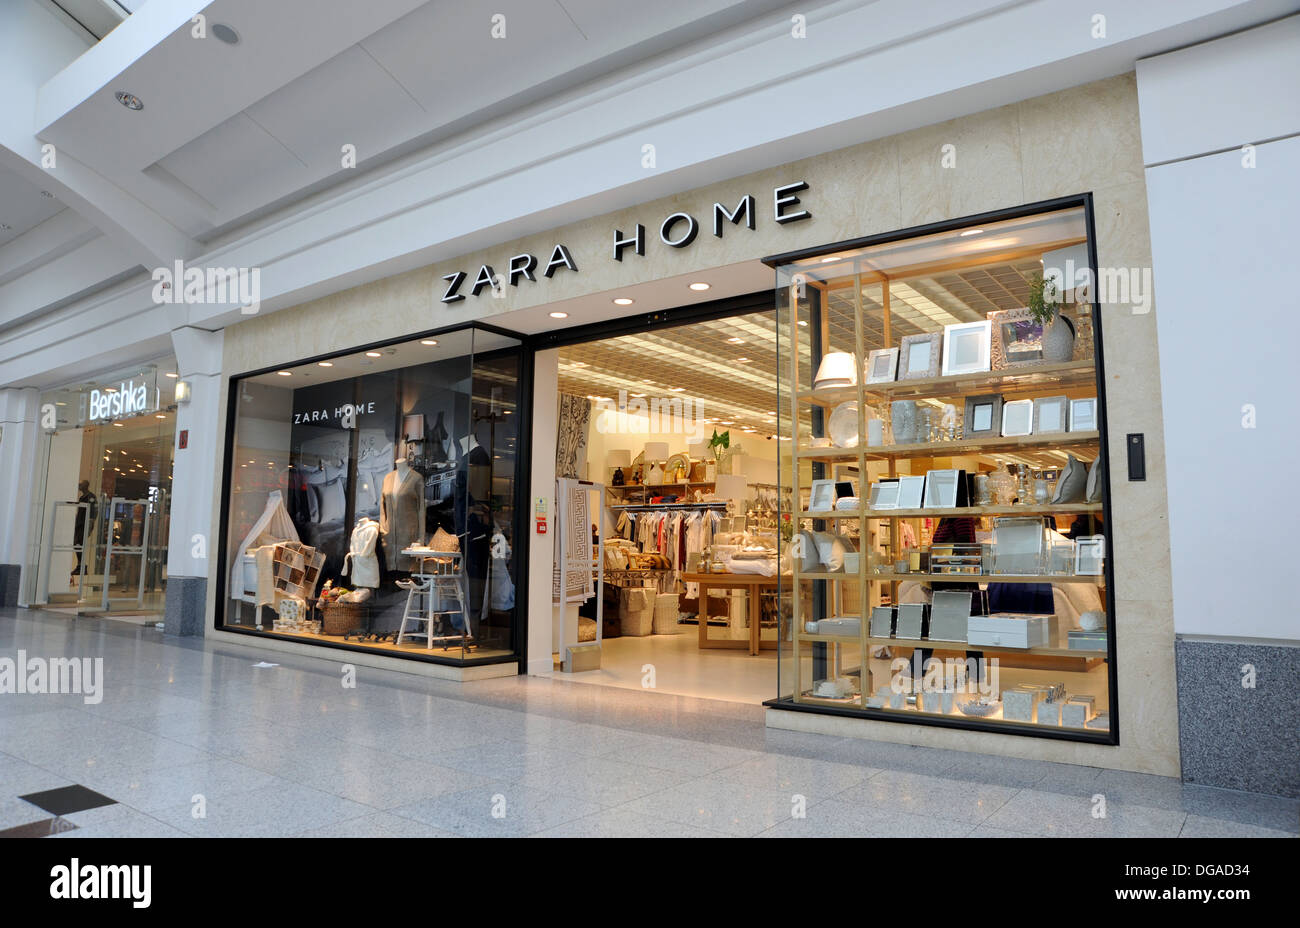 Zara Home store Brighton UK Stock Photo - Alamy